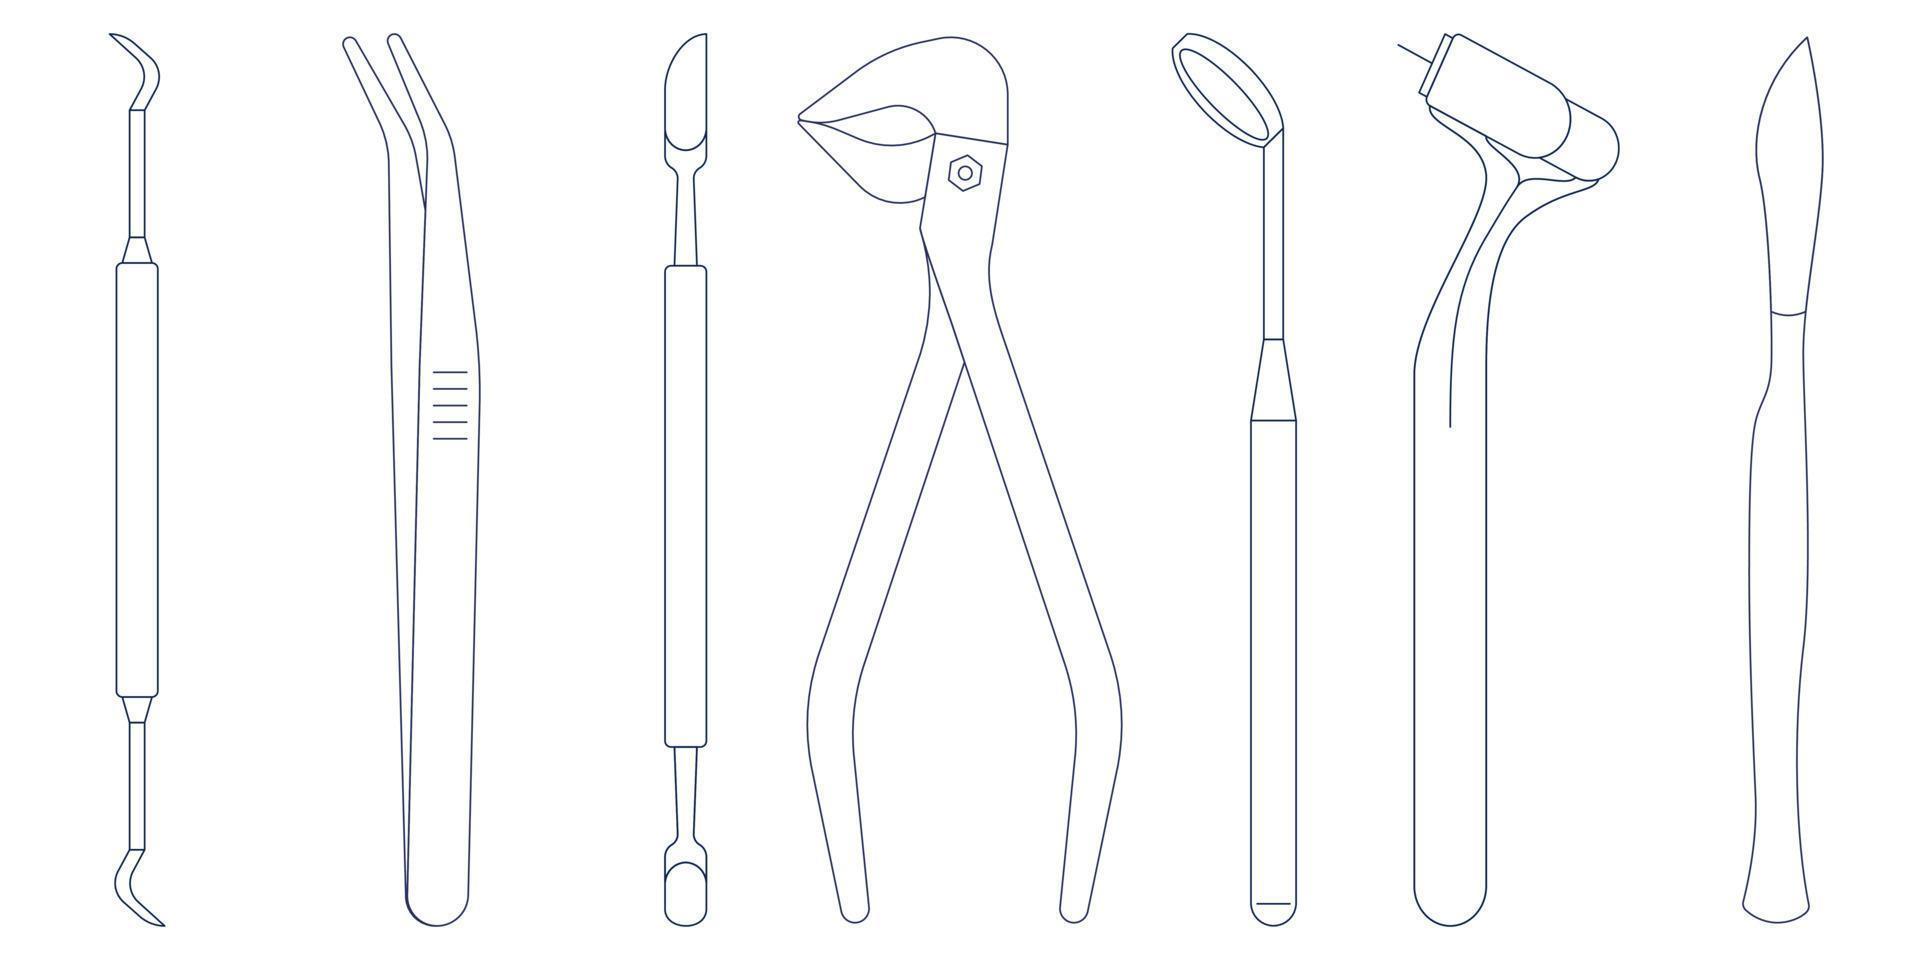 Conjunto de iconos de herramientas e instrumentos dentales. Estomatología suministra icono de vector de estilo plano aislado sobre fondo blanco.